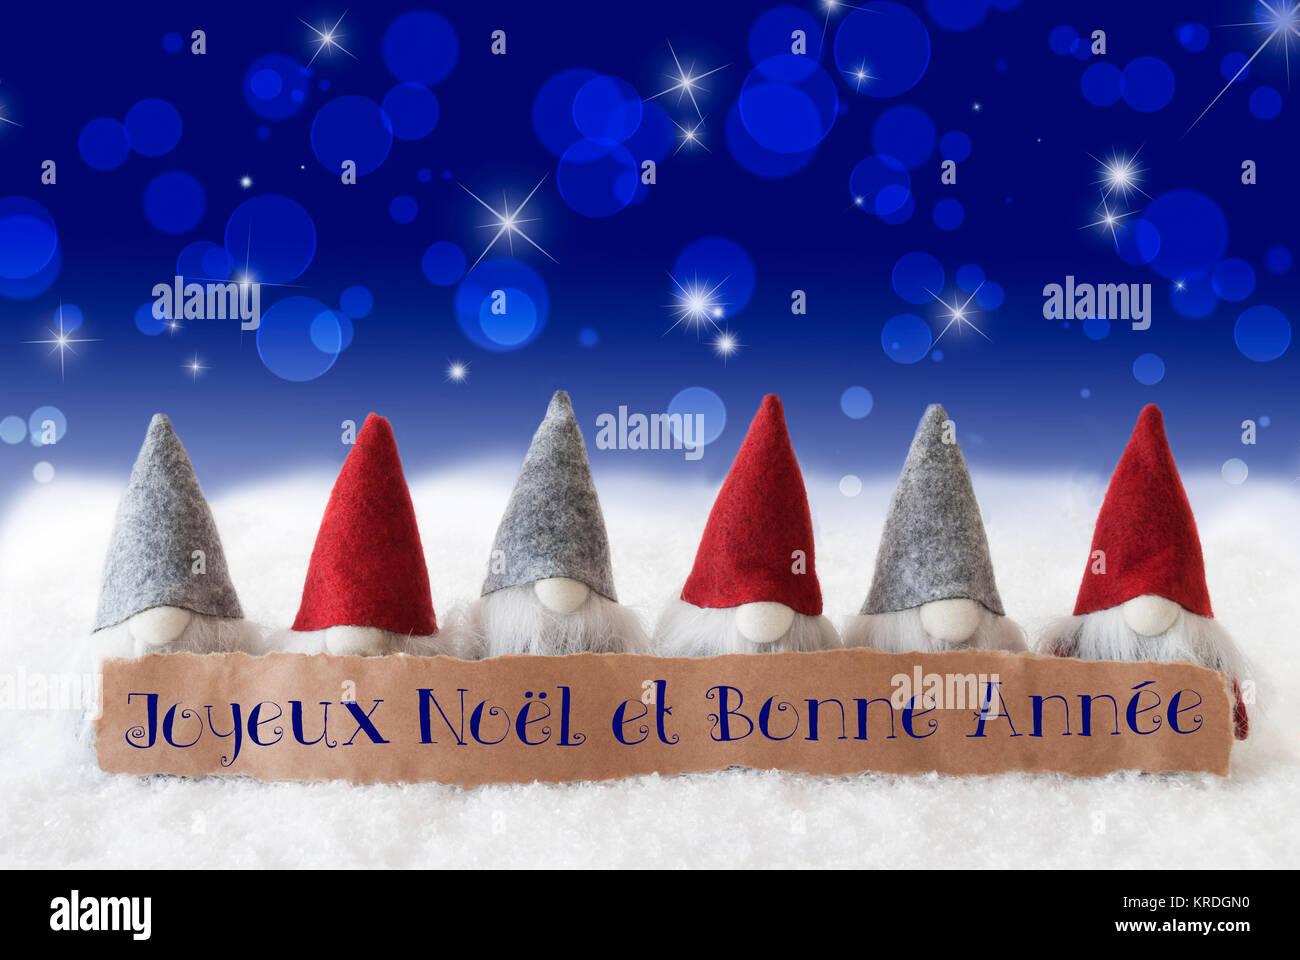 Étiquette avec texte français Joyeux Noel et Bonne Annee signifie joyeux  Noël et Bonne Année. Carte de Vœux de Noël avec les gnomes. Bokeh mousseux  et fond bleu avec de la neige